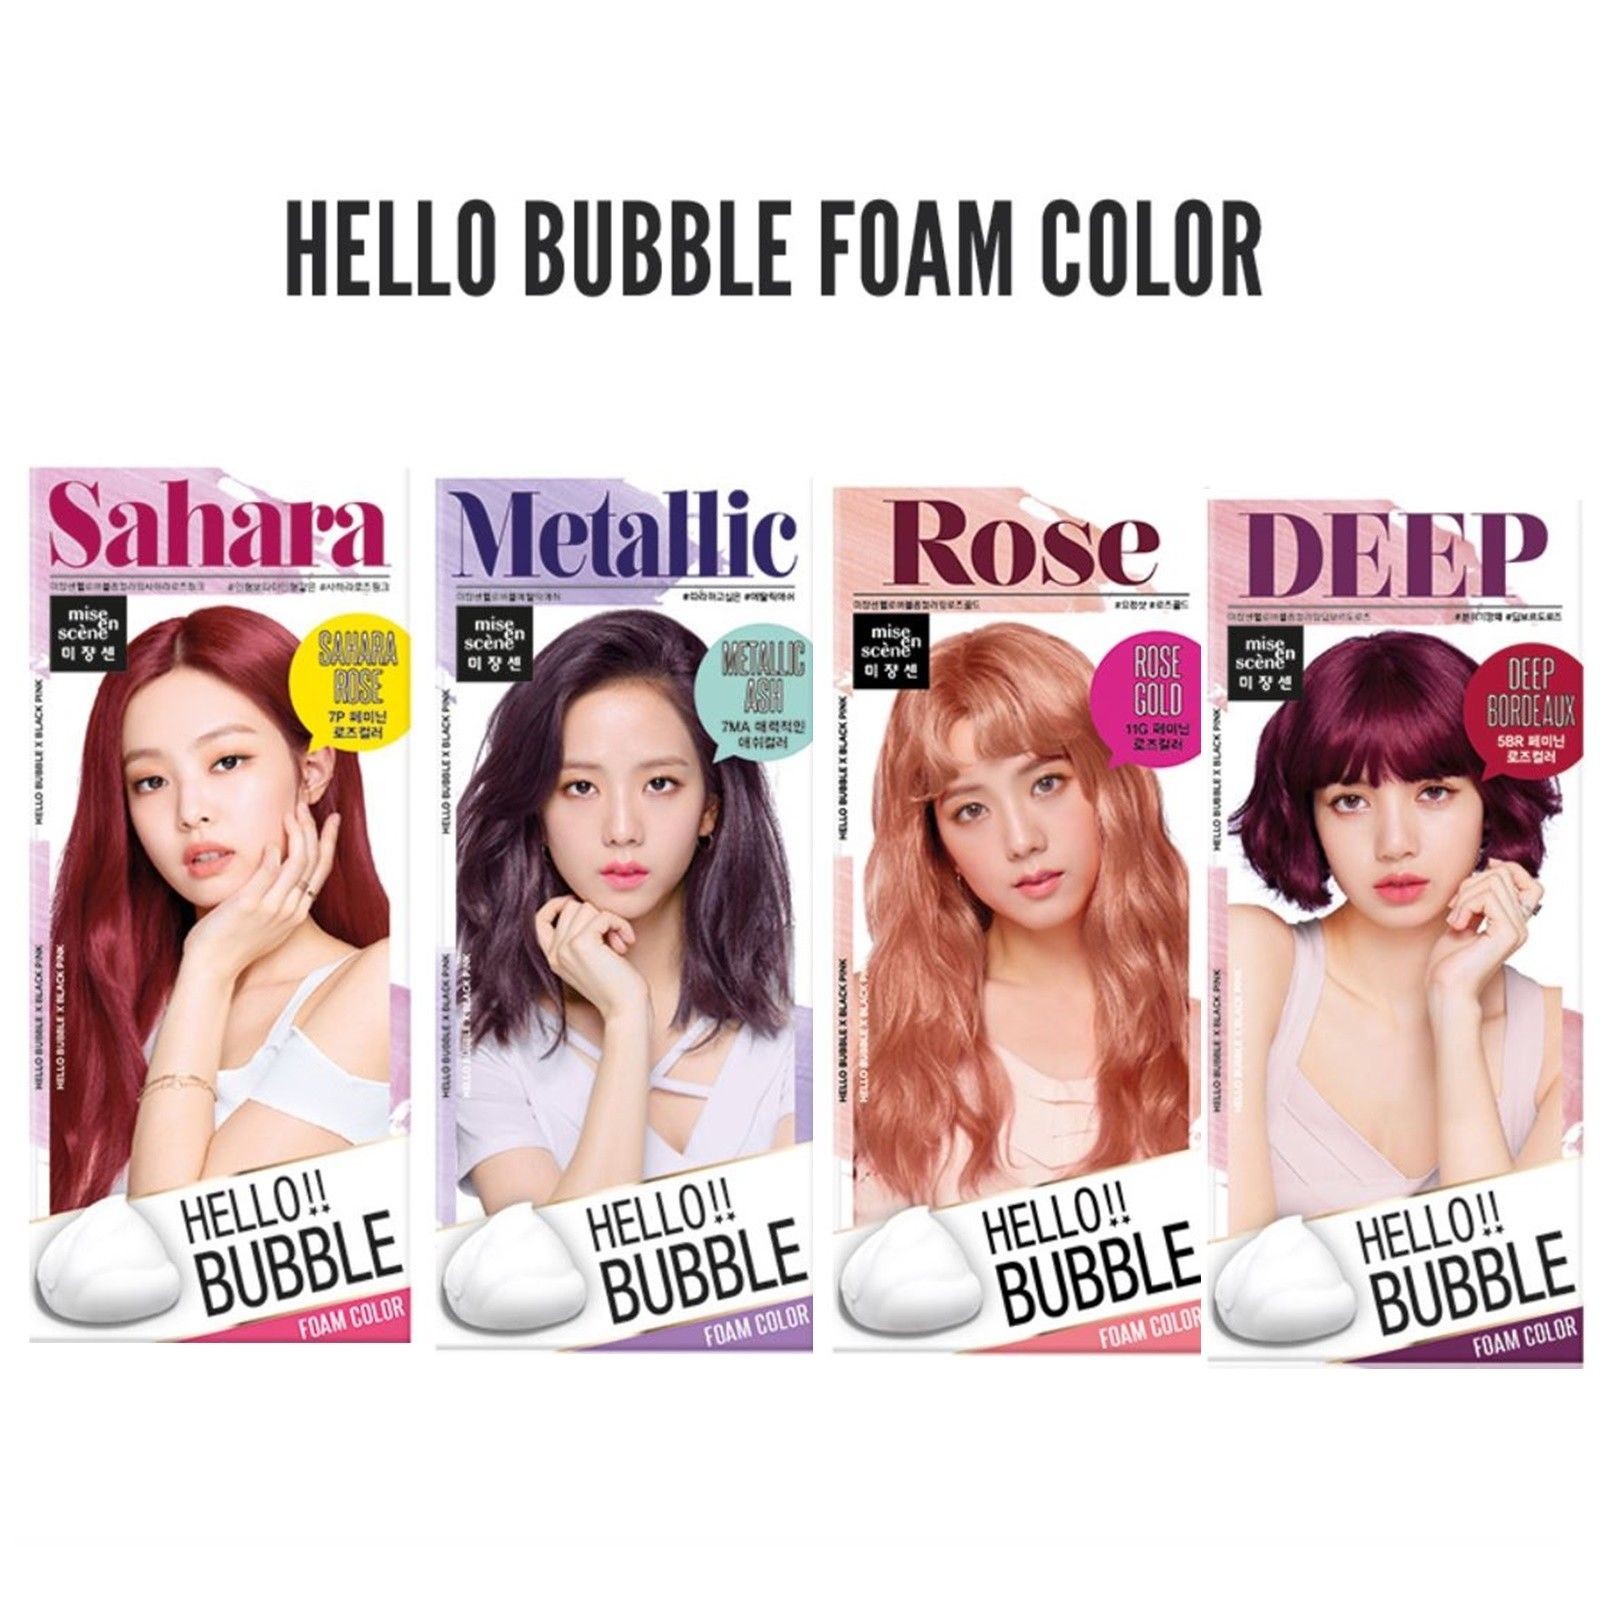 Review bảng màu thuốc nhuộm tóc Blackpink: Blackpink hiện đang là nhóm nhạc nữ được yêu thích nhất Hàn Quốc cũng như Châu Á. Tìm hiểu bảng màu thuốc nhuộm tóc của họ và xem bộ sưu tập ấn tượng của họ cho thiết kế tóc độc đáo. Hãy xem hình ảnh review để có cái nhìn tổng quan về dòng sản phẩm này.